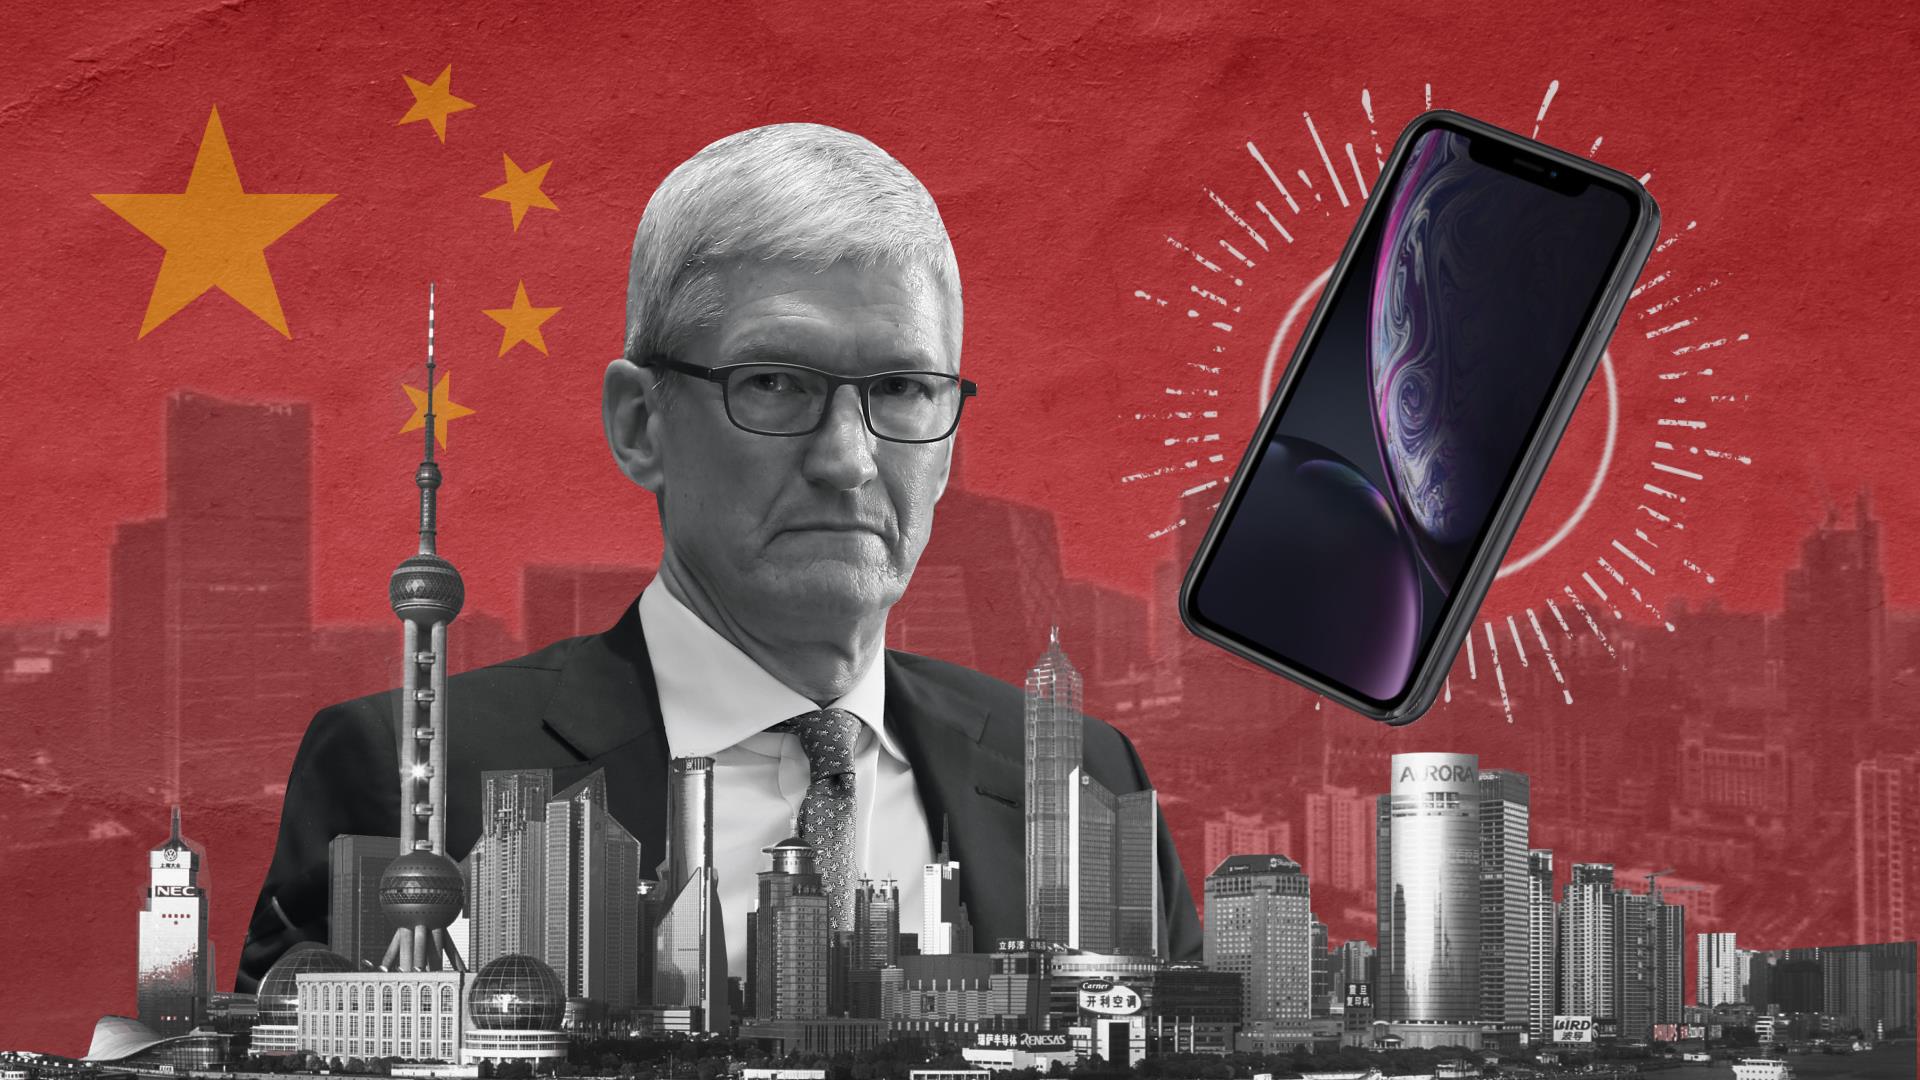 Apple yêu cầu các nhà cung cấp lập kế hoạch tích cực hơn để lắp ráp các sản phẩm ở những nơi khác tại châu Á. Trong khi doanh thu tháng 11 của Foxconn sụt giảm thê thảm sau loạt biến cố chấn động.